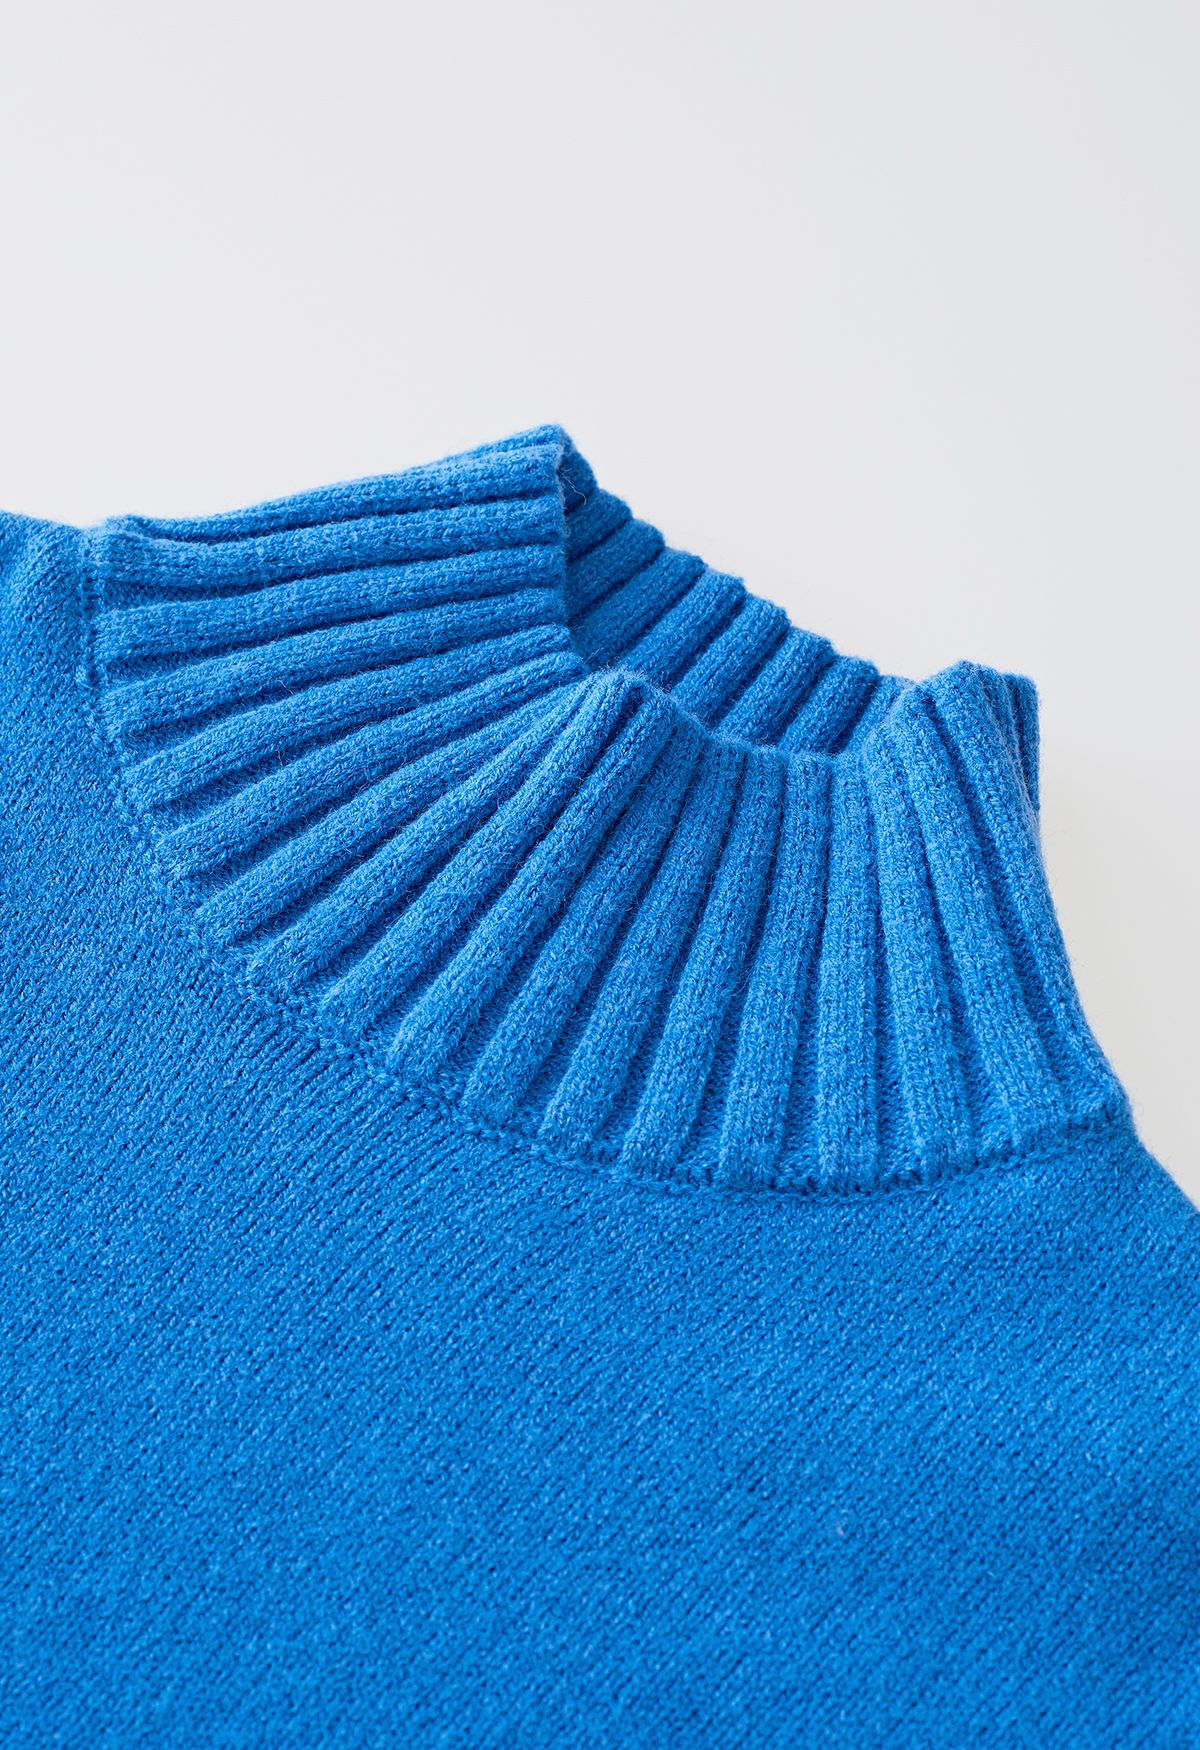 Conjunto de suéter gola alta com abotoamento e calça de malha em azul